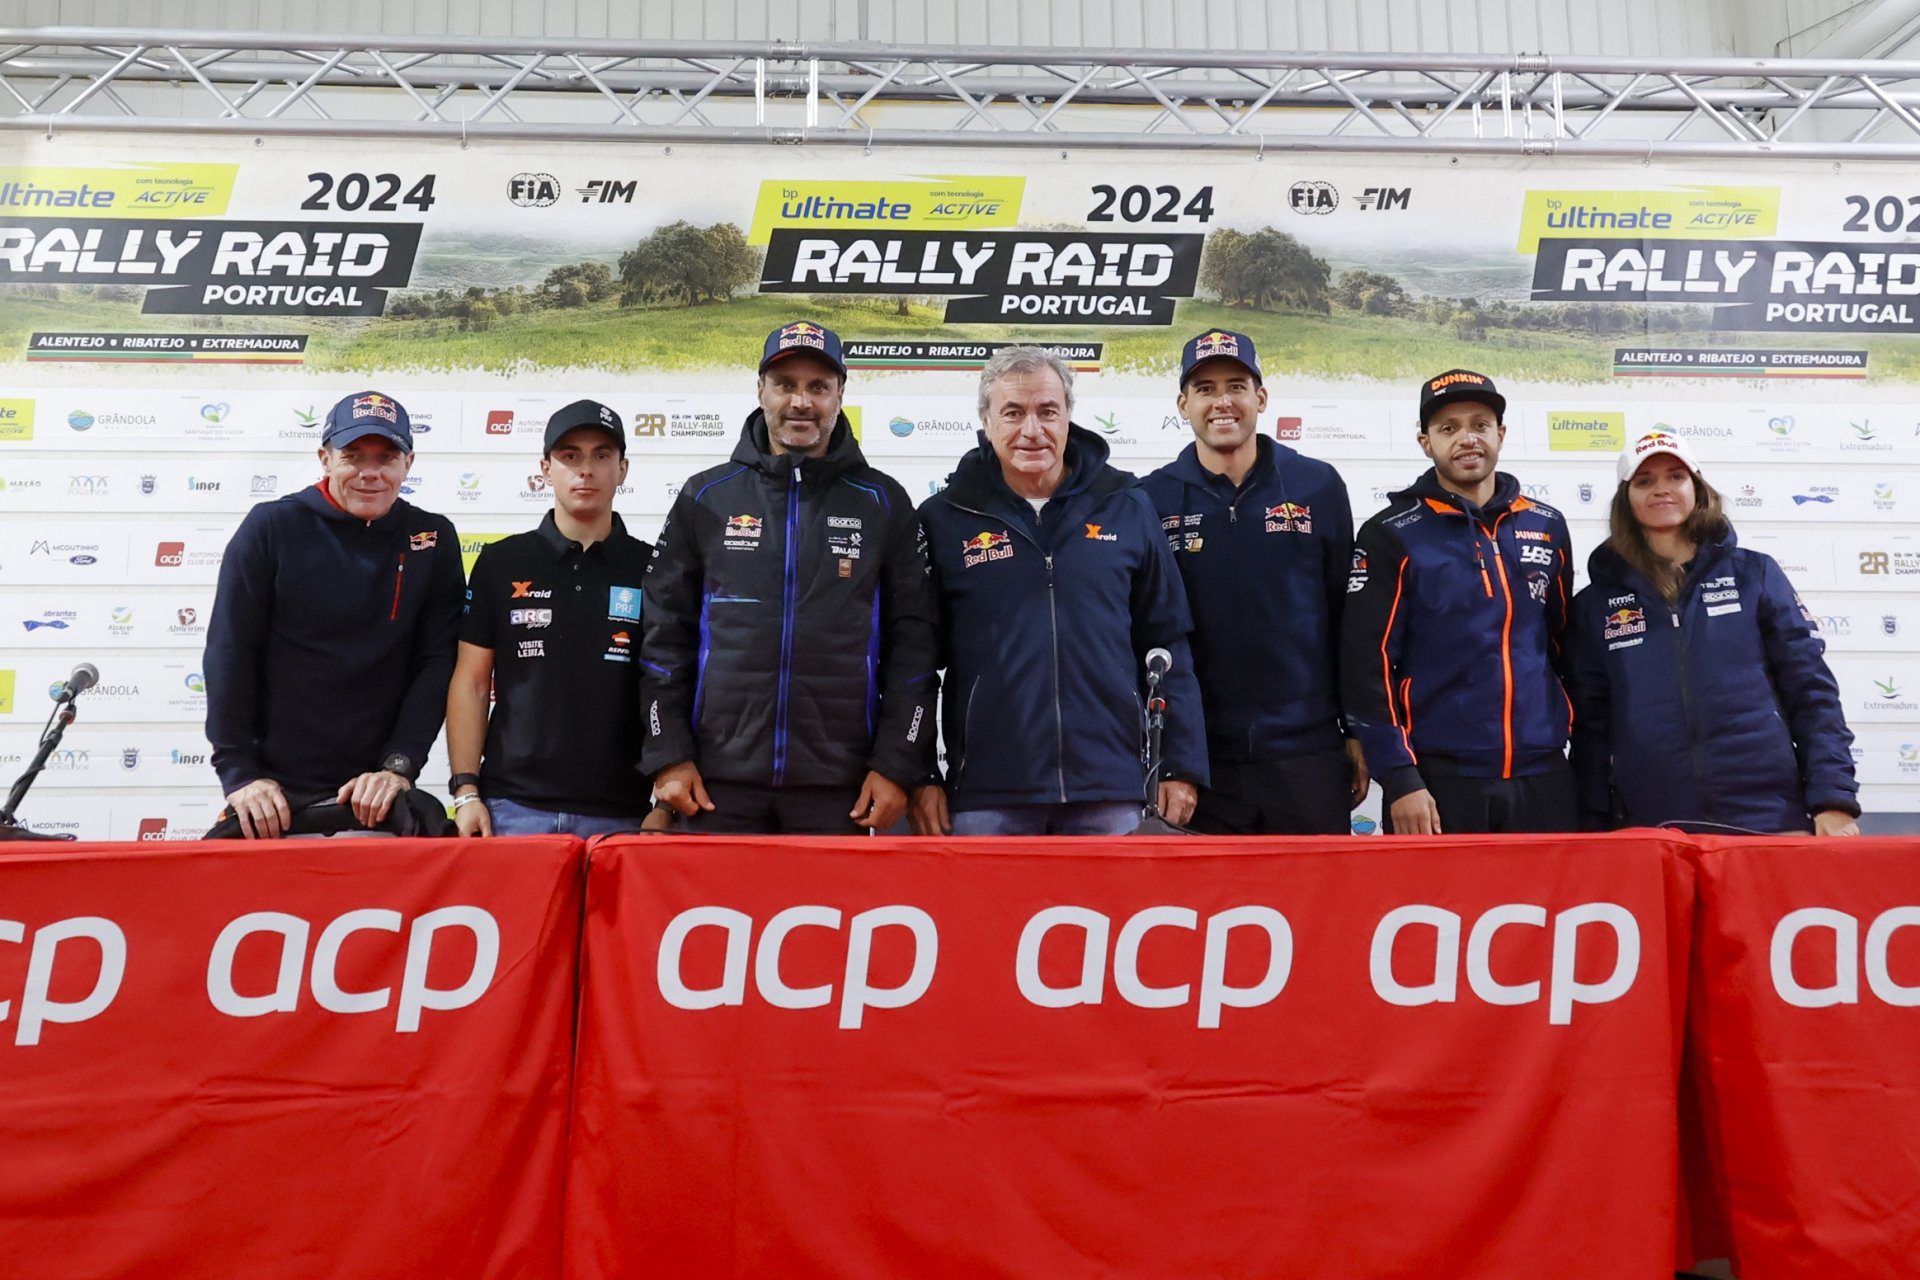 Declarações dos pilotos na conferência de imprensa de antevisão do Rally-Raid Portugal